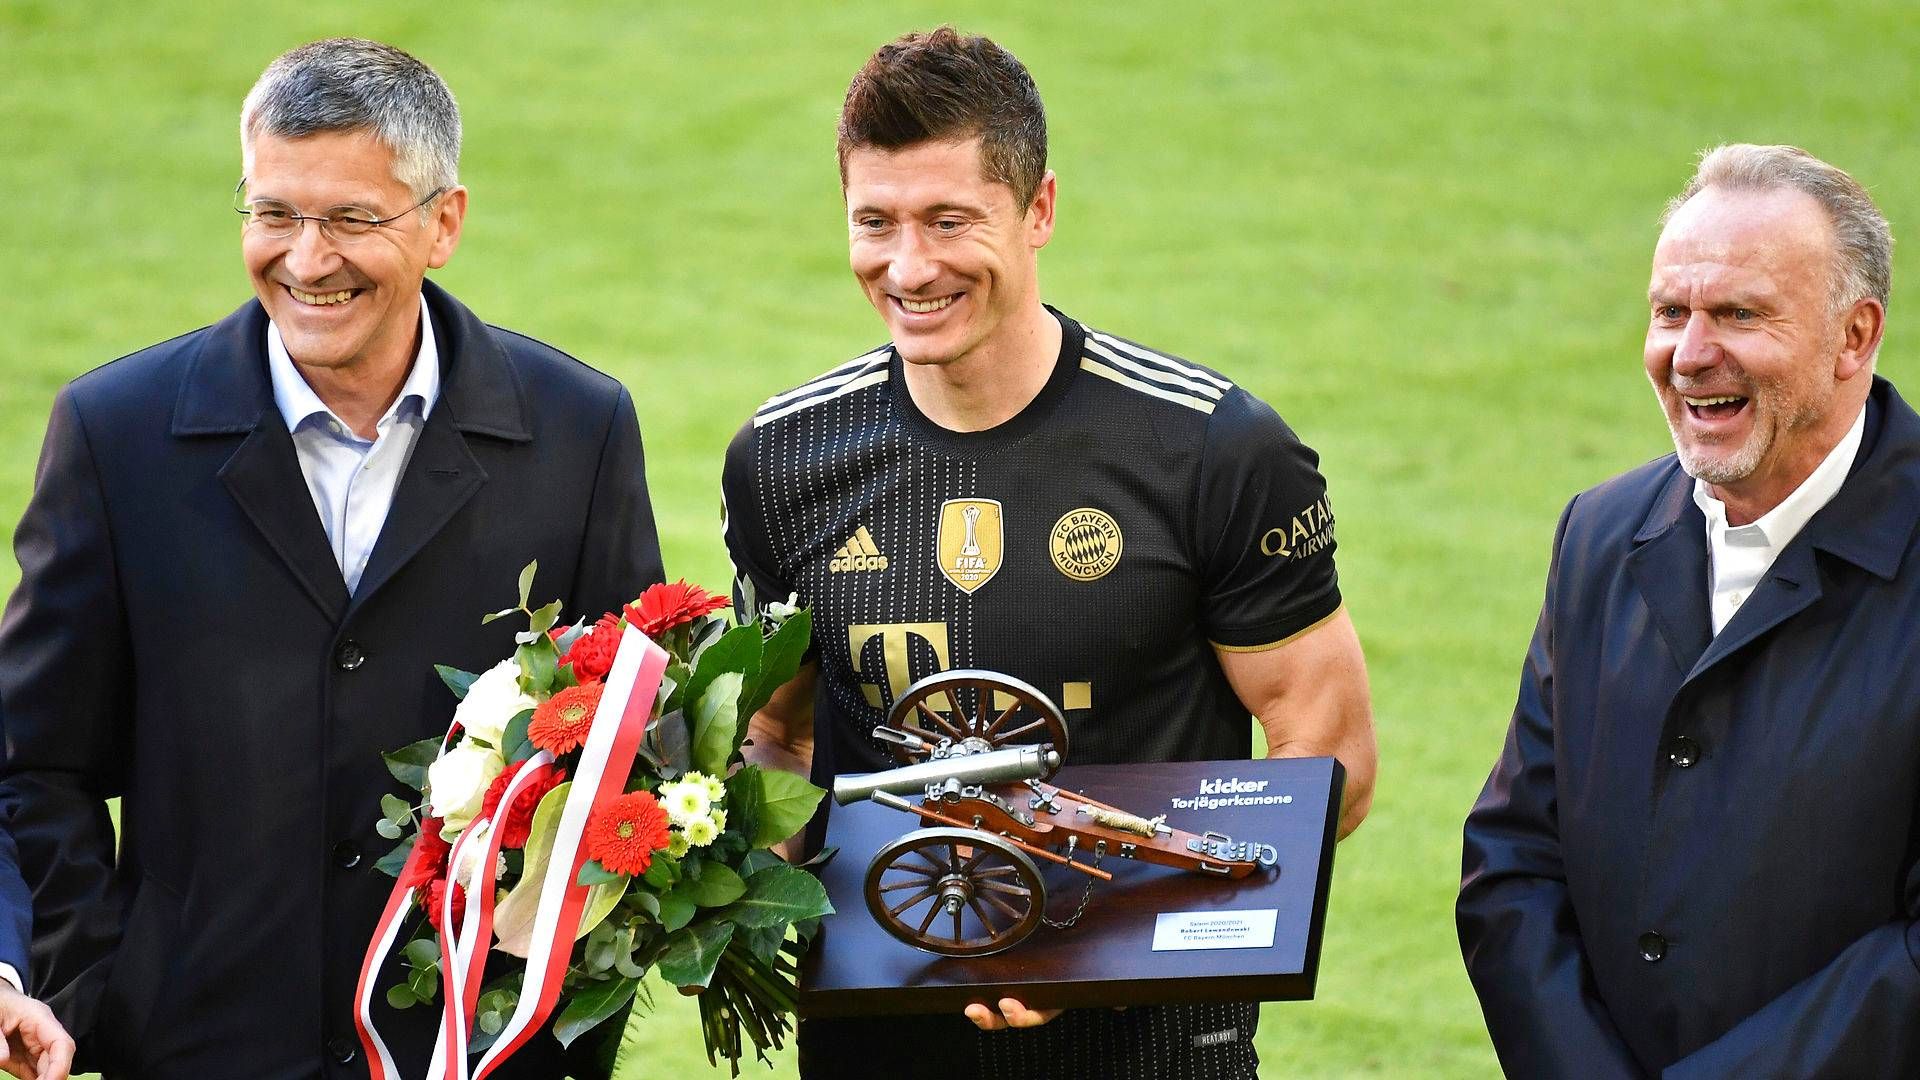 Nent håber, at Polens største fodboldstjerne, Robert Lewandowski, der sidste sæson blev Bundesligaens mest scorende og hjalp Bayern München med at vinde ligaen bliver et trækplaster for Viaplay. | Foto: Frank Hoermann/AP/Ritzau Scanpix